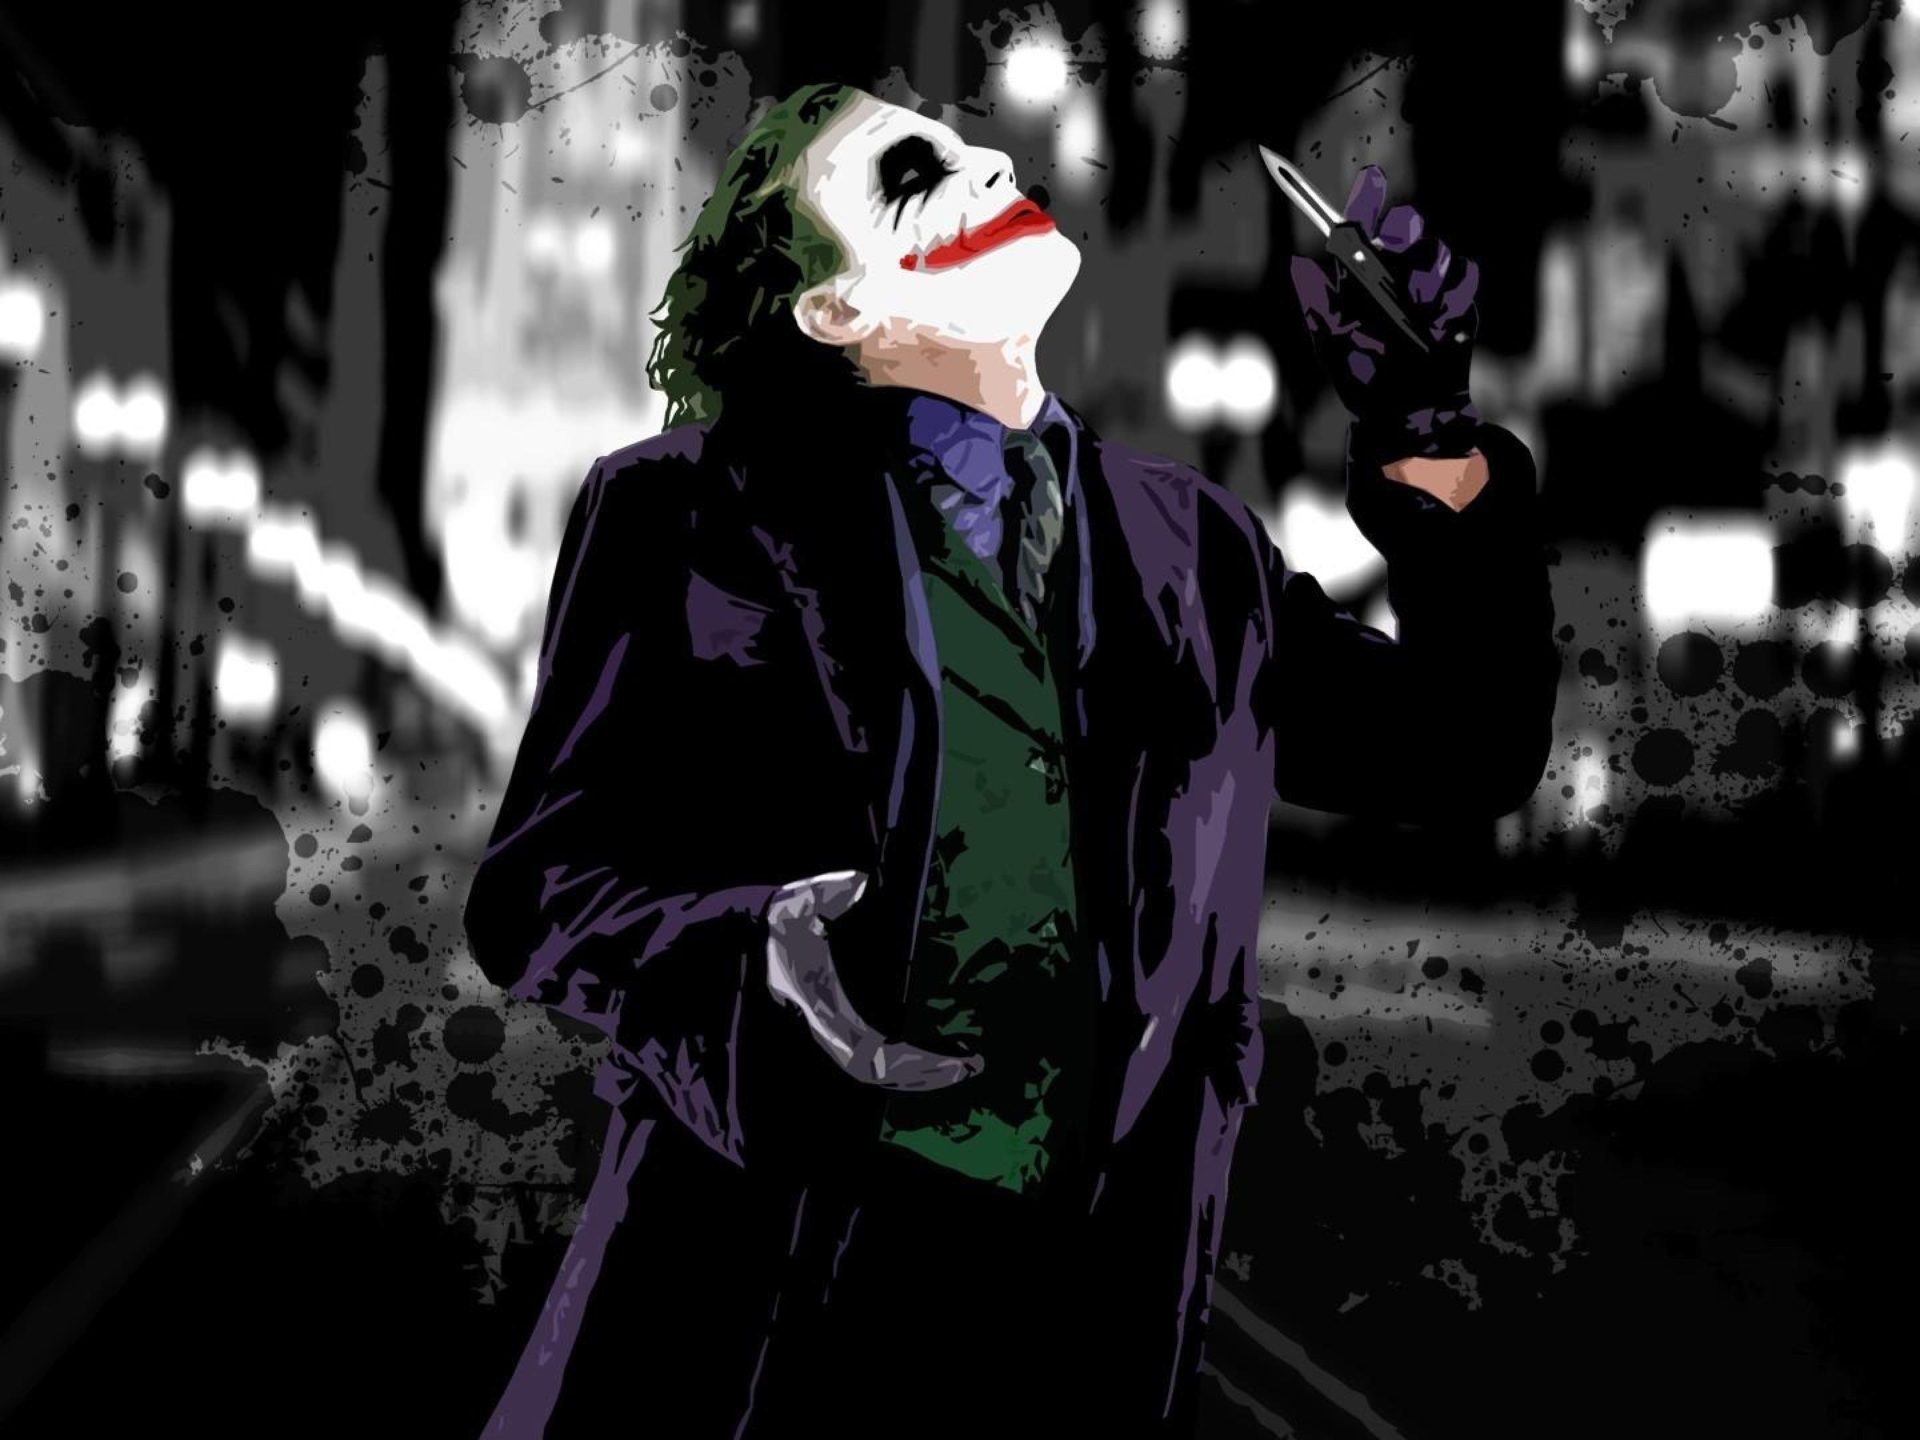 Dark Joker Wallpapers